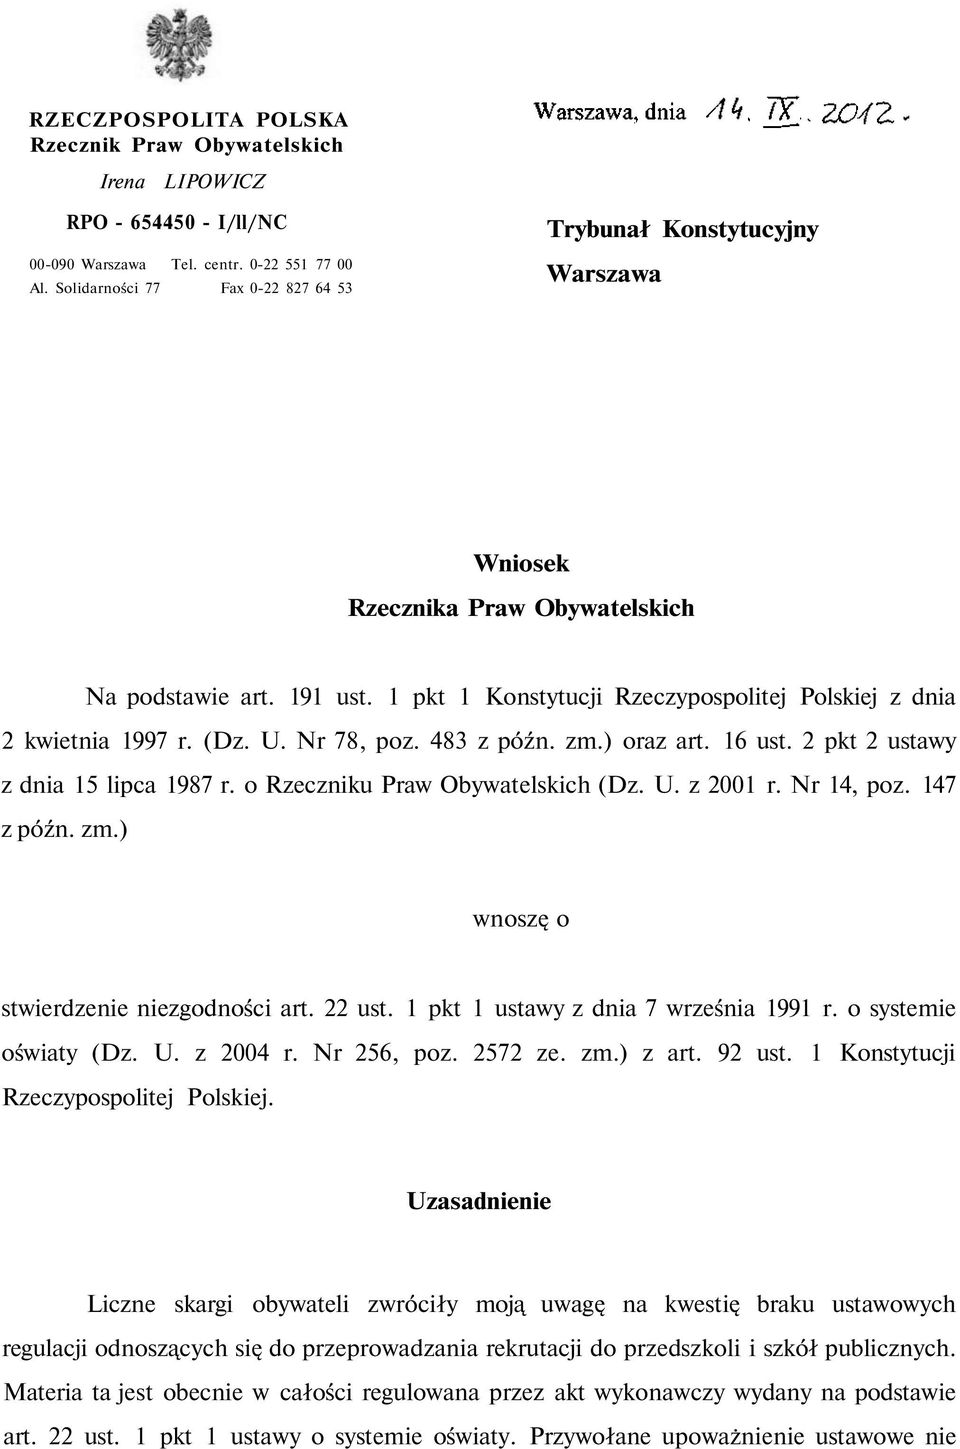 1 pkt 1 Konstytucji Rzeczypospolitej Polskiej z dnia 2 kwietnia 1997 r. (Dz. U. Nr 78, poz. 483 z późn. zm.) oraz art. 16 ust. 2 pkt 2 ustawy z dnia 15 lipca 1987 r.